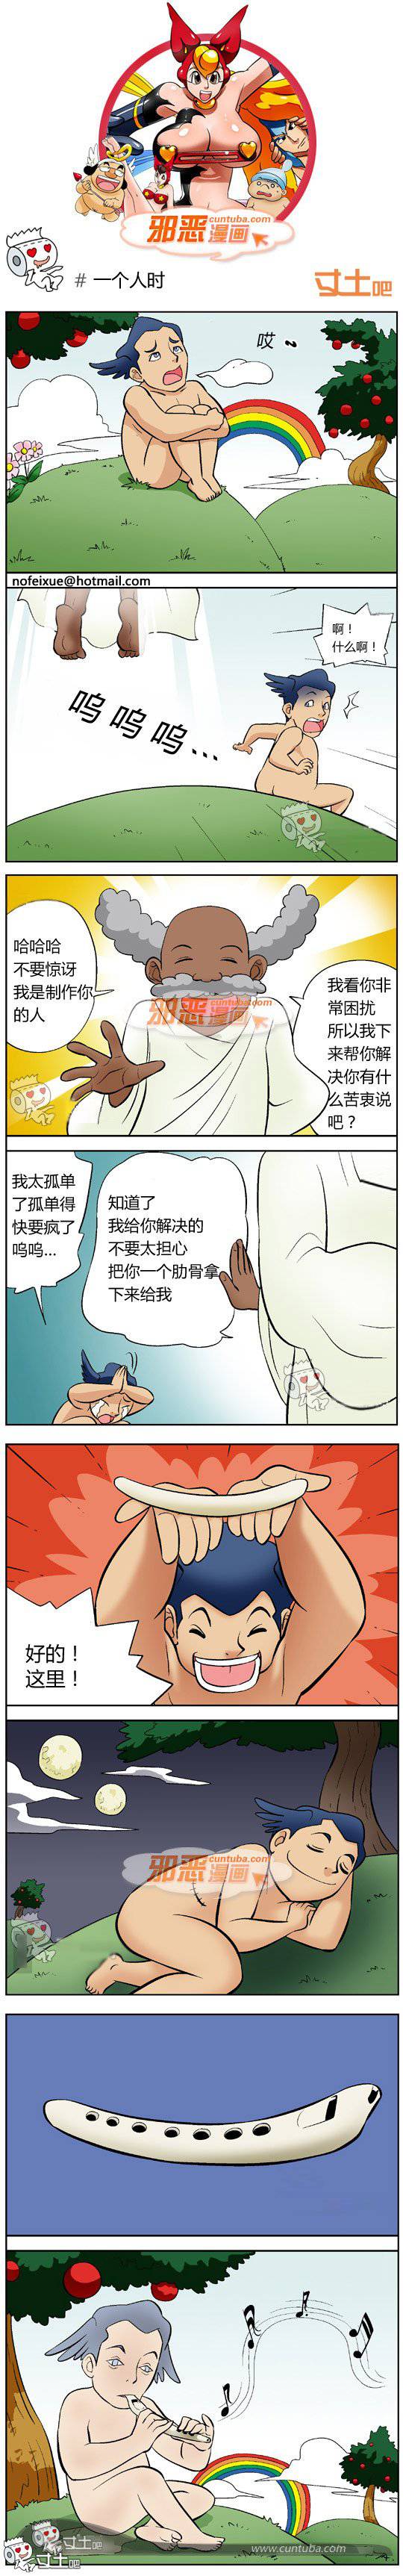 邪恶漫画爆笑囧图第216刊：郊外